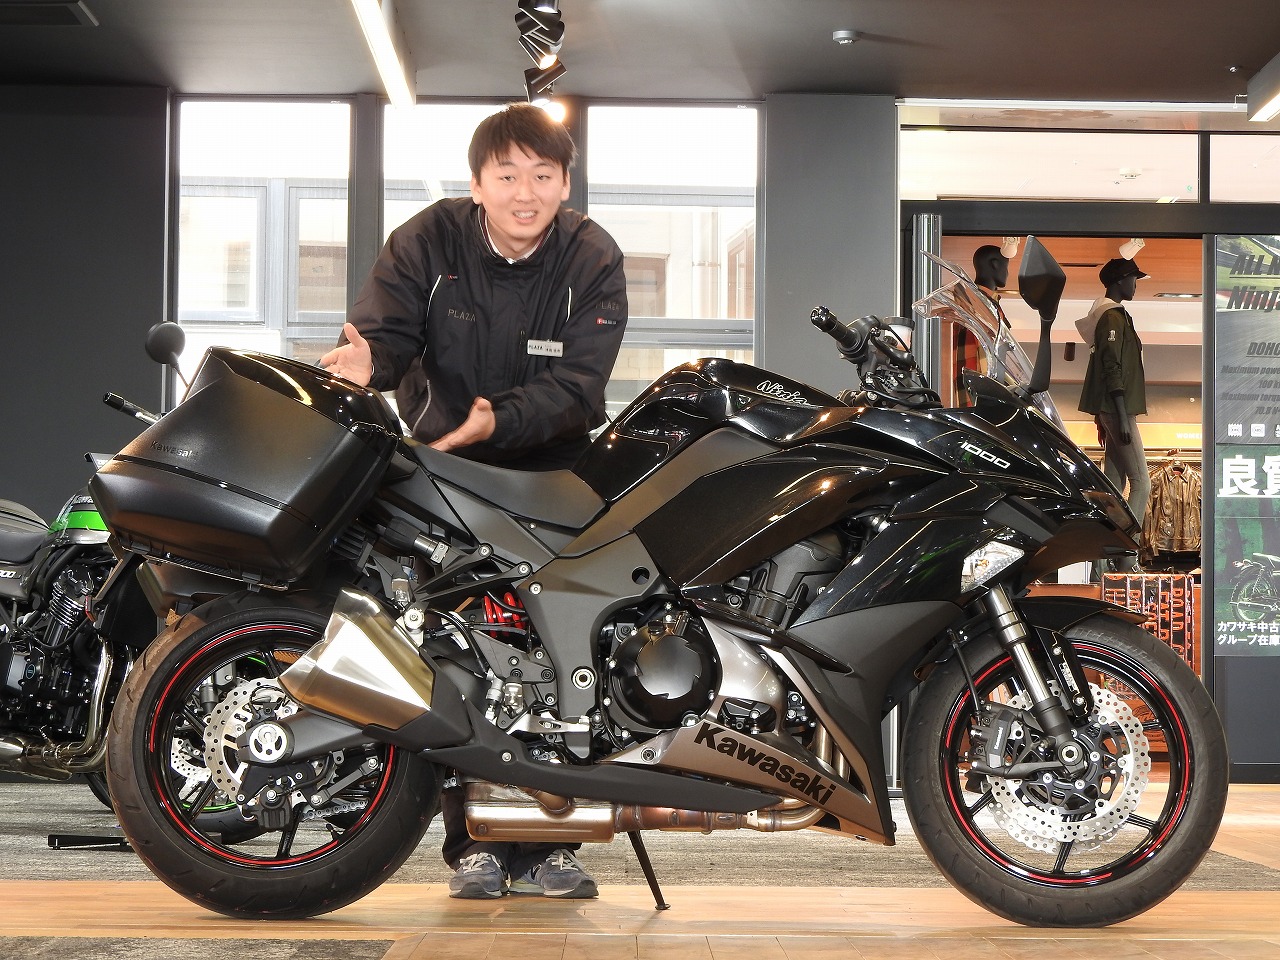 Ninja1000パニアケース展示してます 最新情報 U Media ユーメディア 中古バイク 新車バイク 探しの決定版 神奈川 東京でバイク探すならユーメディア